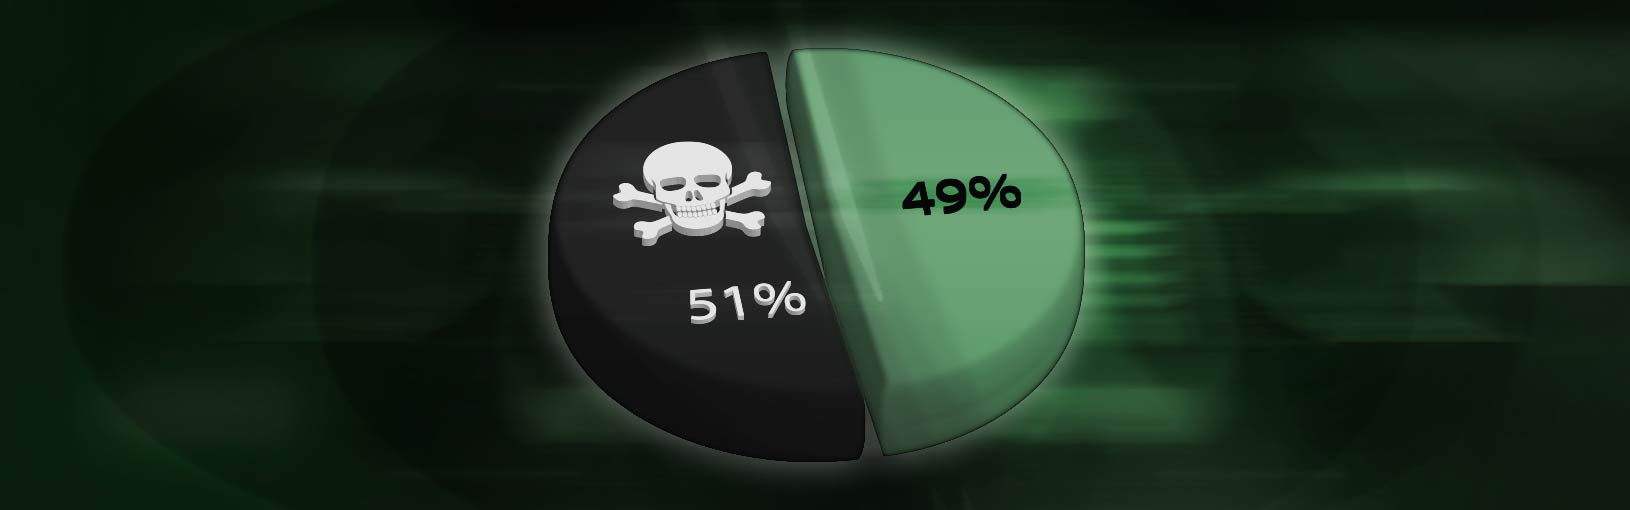 51% Attacks